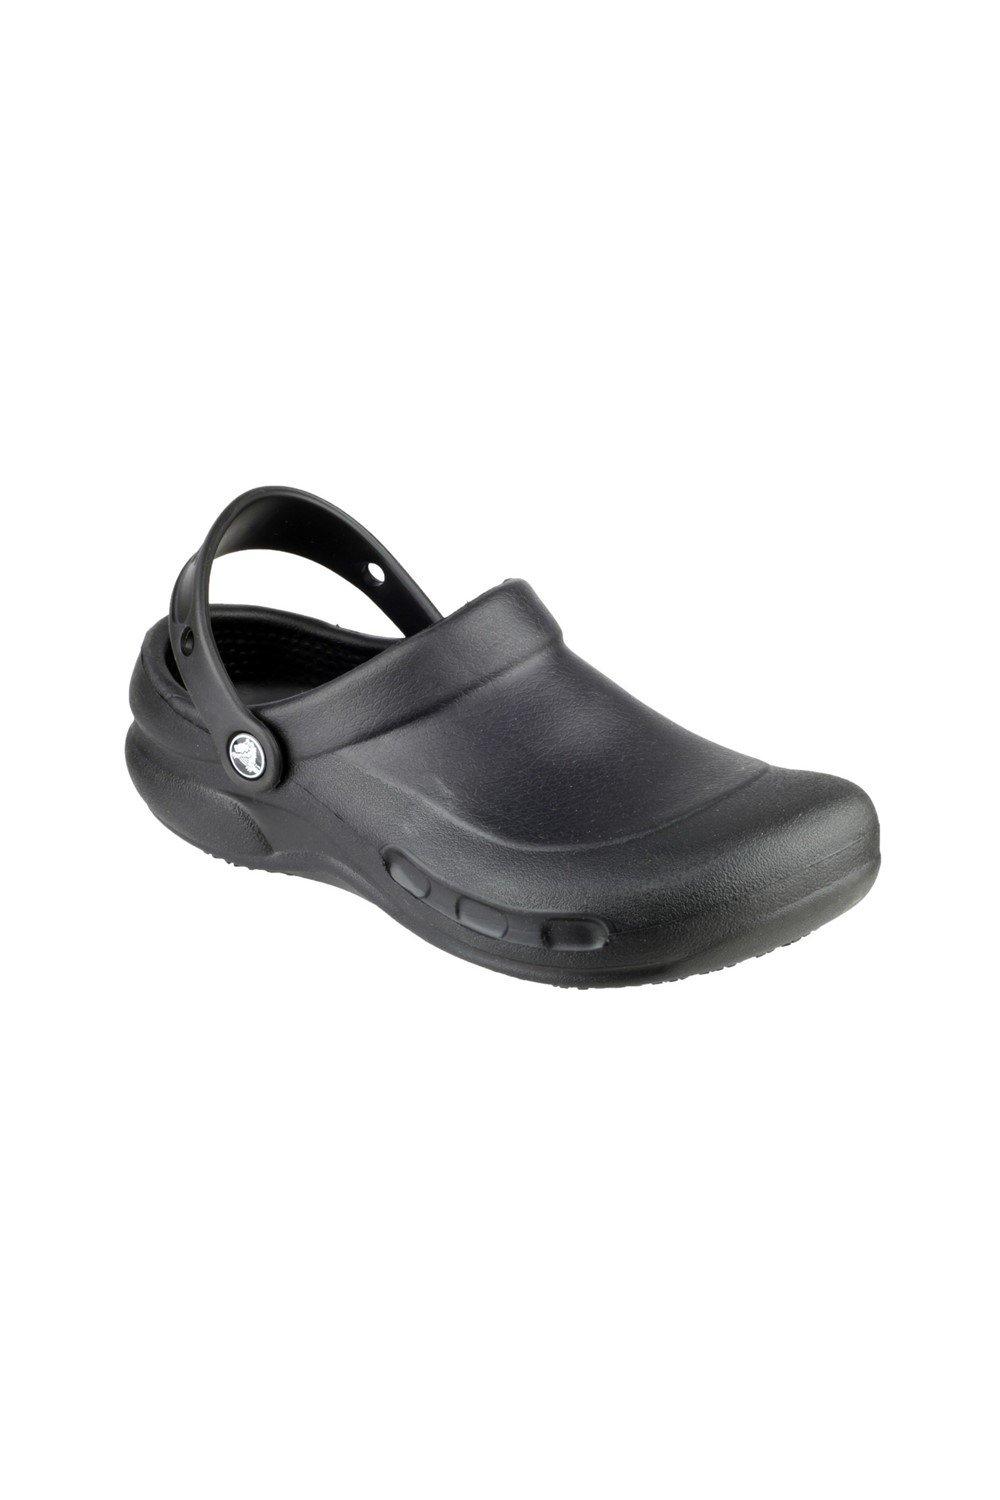 Туфли-слипоны из термопластика Бистро Crocs, черный туфли без шнуровки из термопластика сезонный камуфляж crocs серый